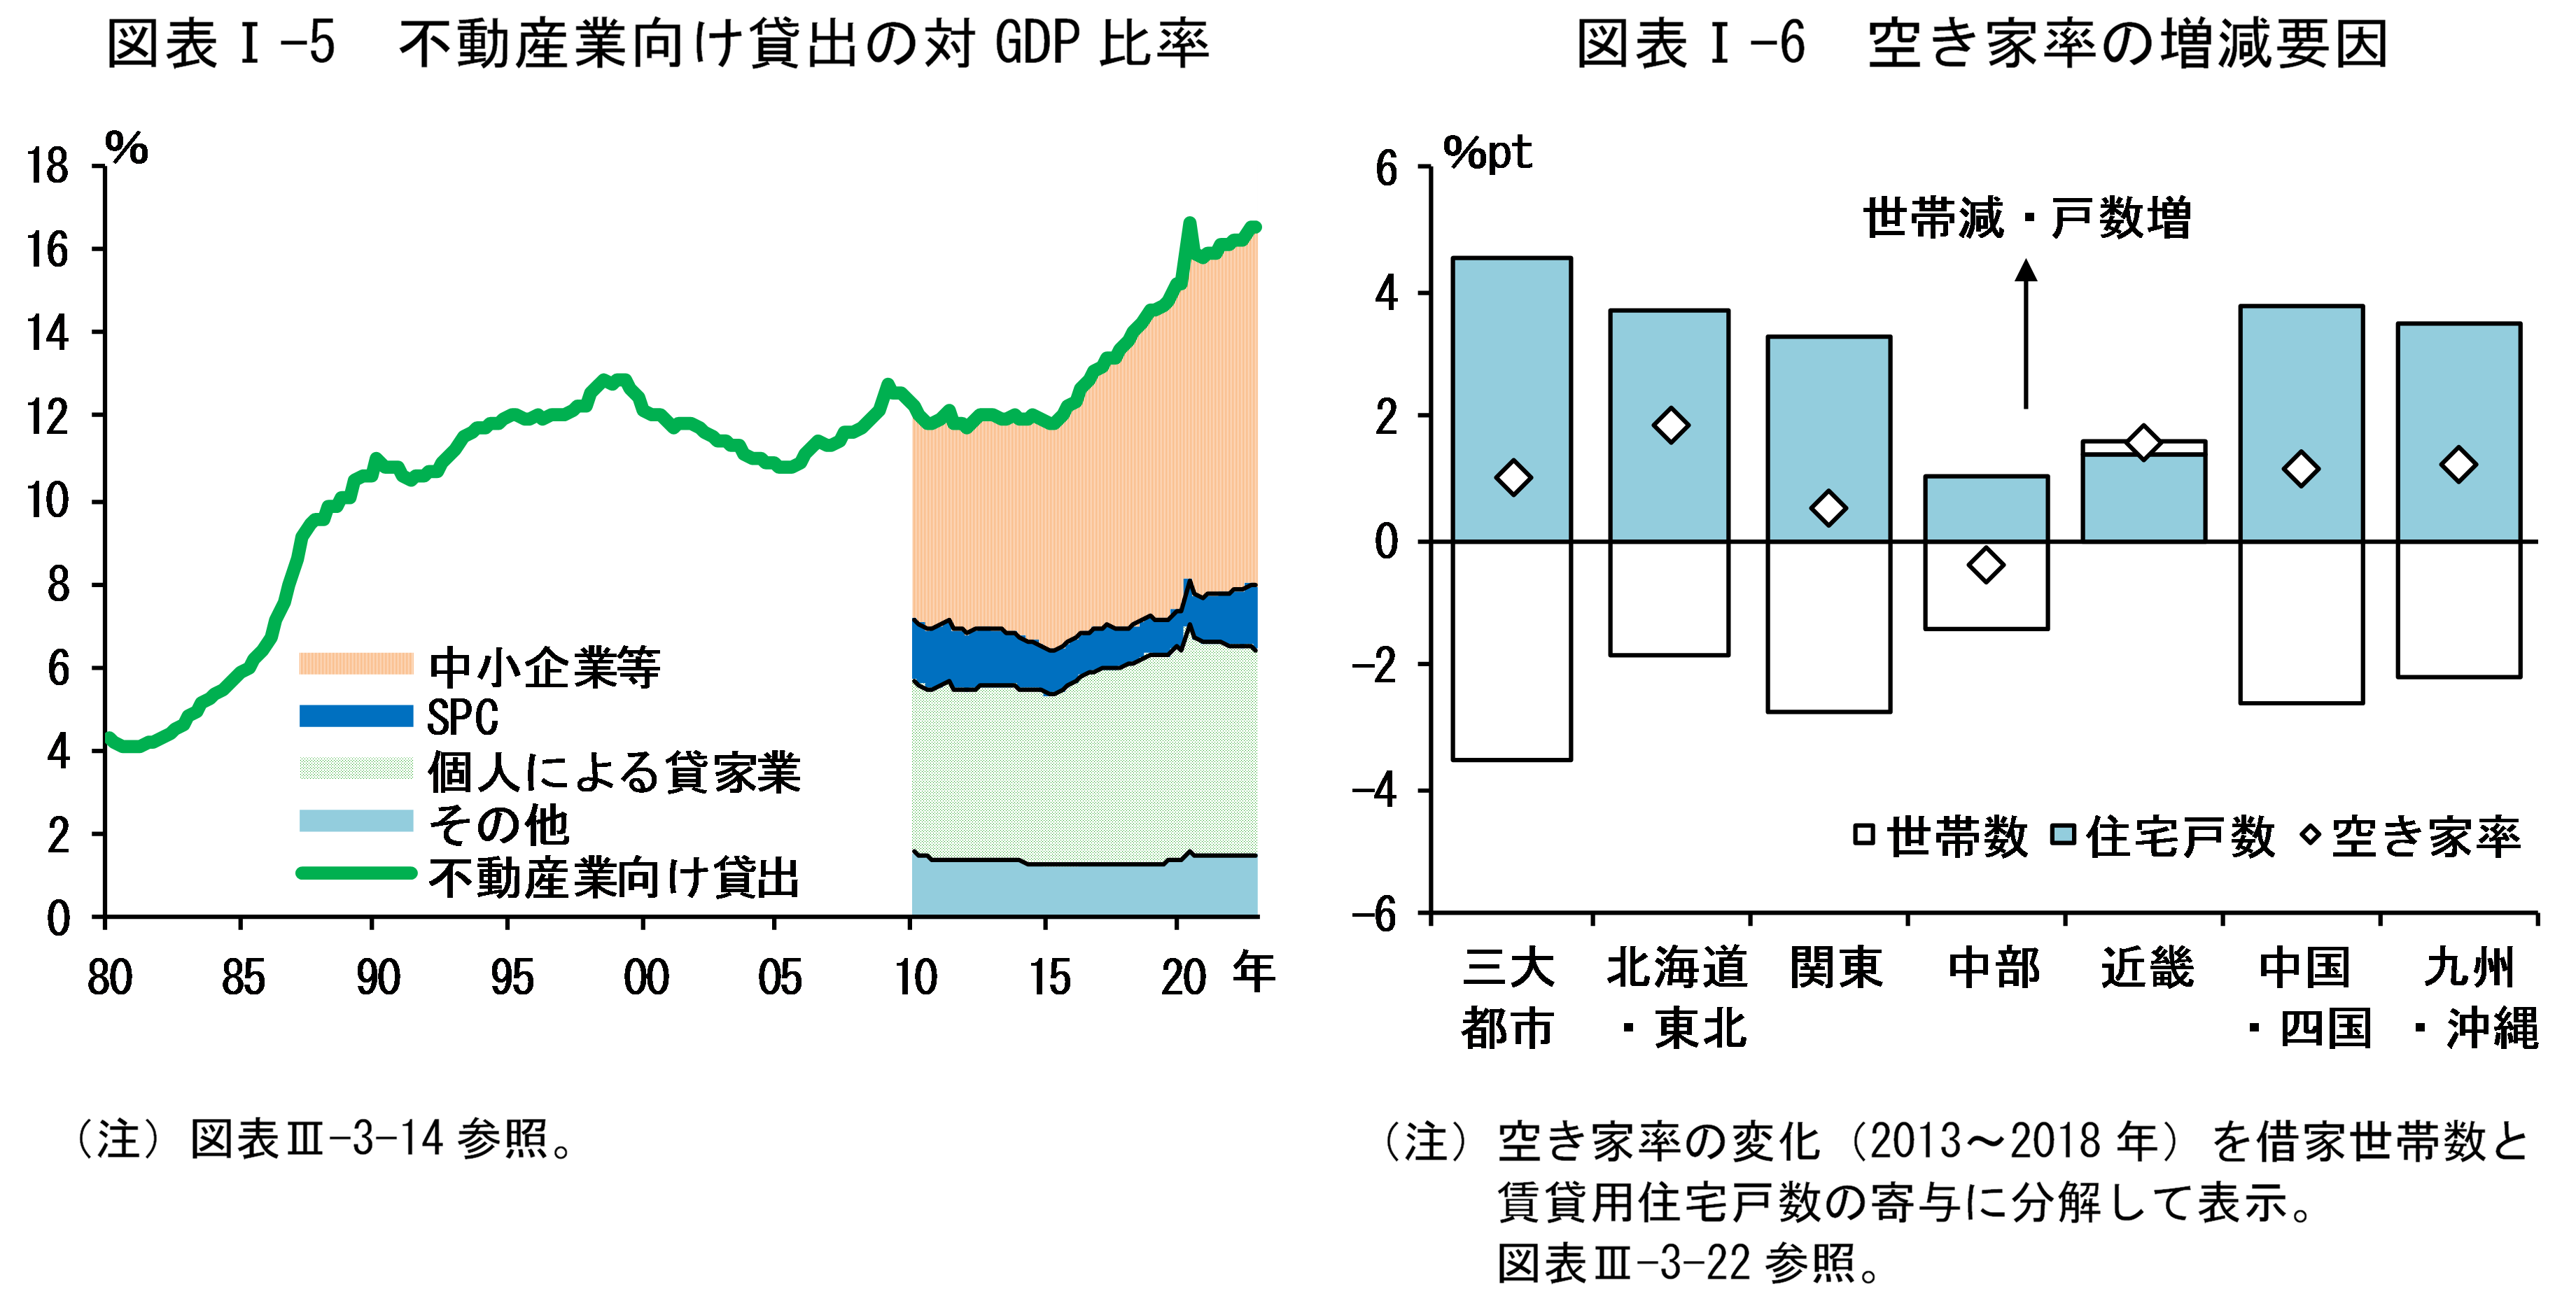 図表Iの5は「不動産業向け貸出の対GDP比率」、図表Iの6は「空き家率の増減要因」です。